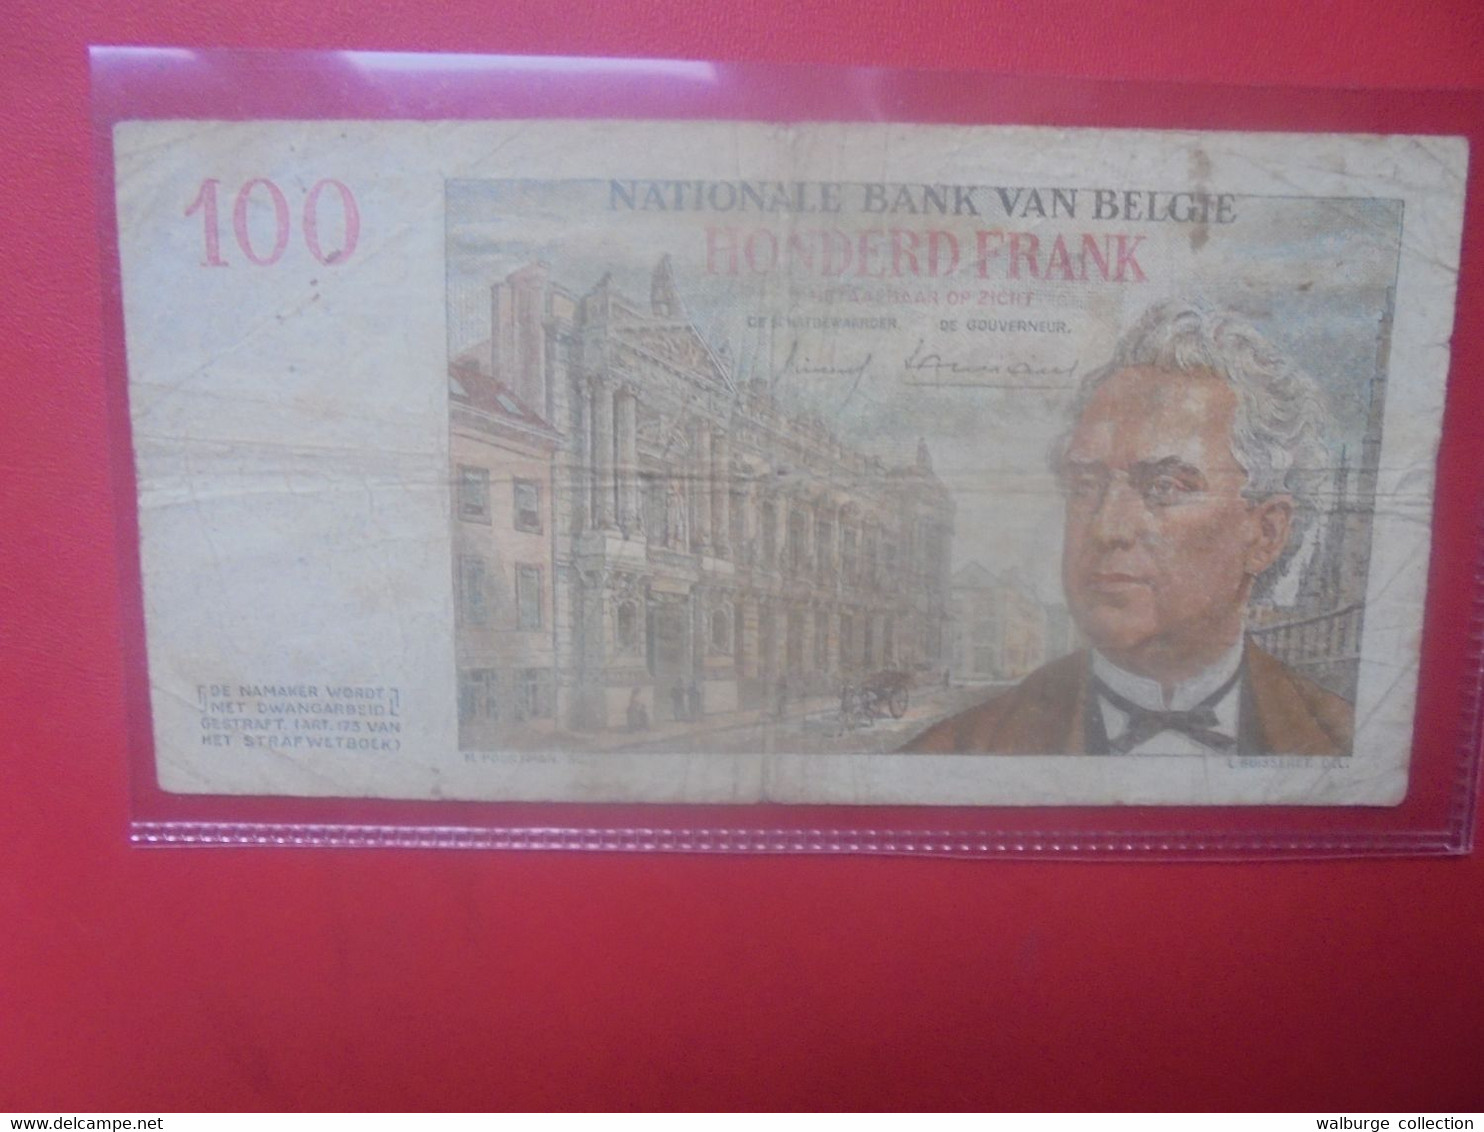 BELGIQUE 100 Francs 1958 Circuler (B.28) - 100 Francos